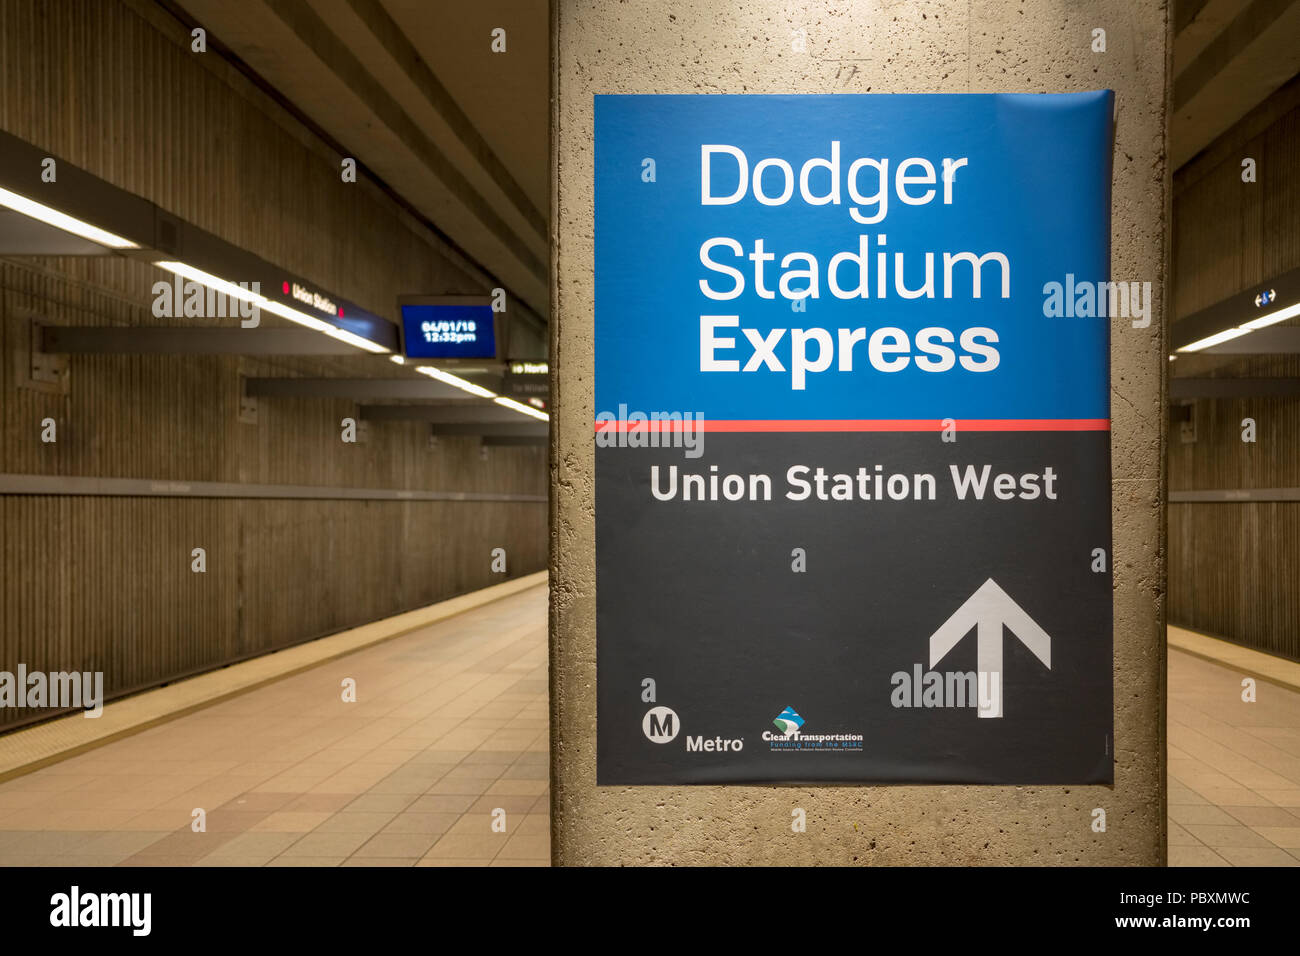 Nahaufnahme von einem Zeichen für das Dodger Stadium Express im LA Metro, Los Angeles, Kalifornien, USA Stockfoto